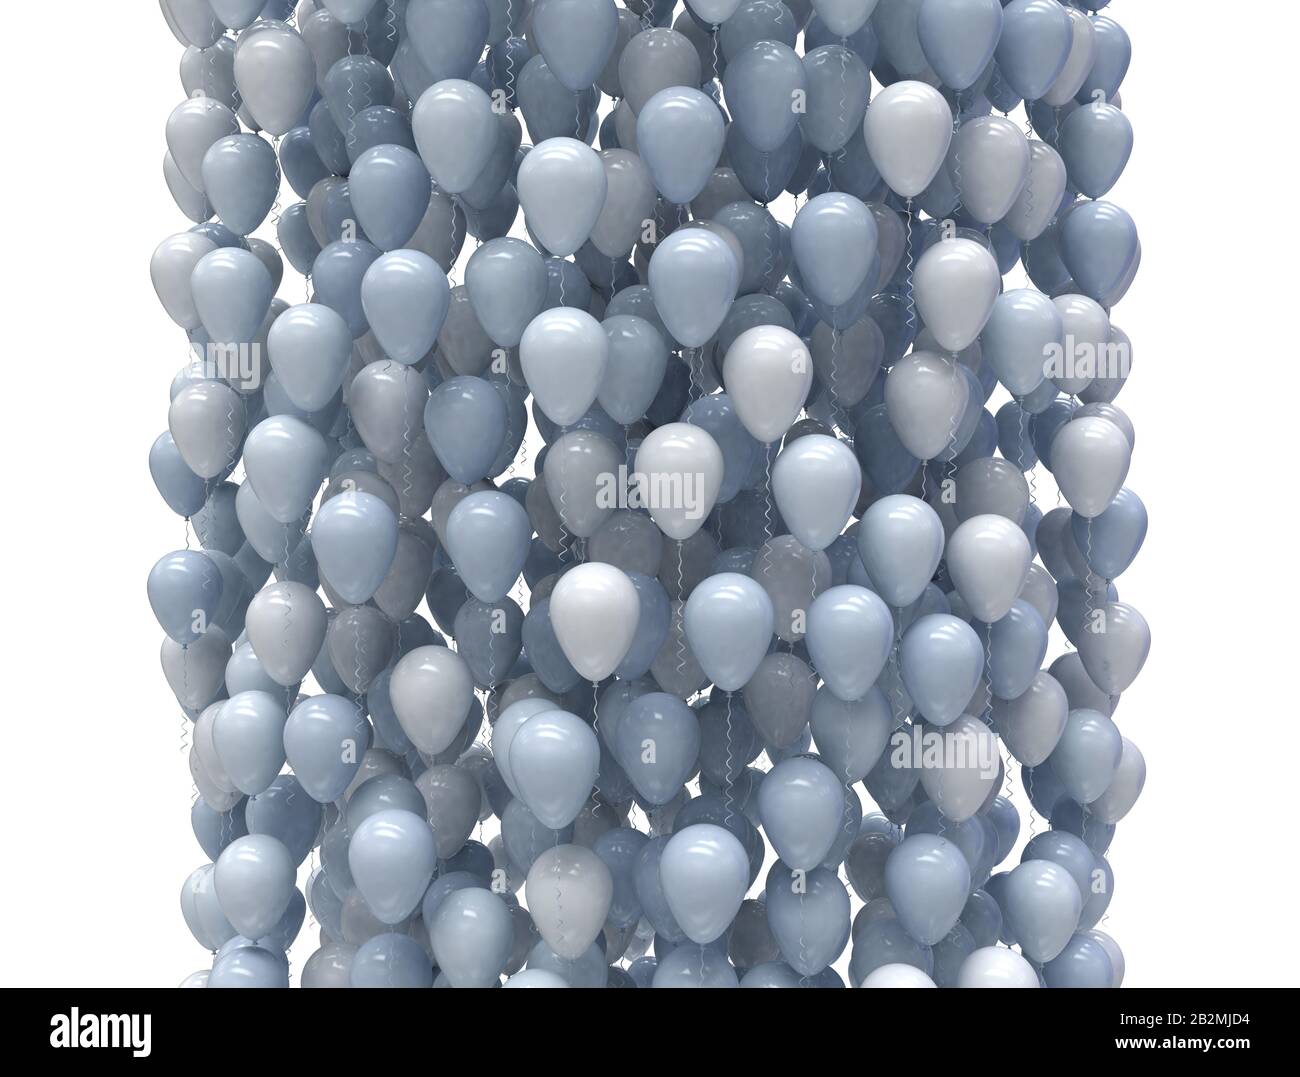 Blau und weiß Party Ballons steigen in einer großen Gruppe, isoliert auf weißem Hintergrund. Stockfoto